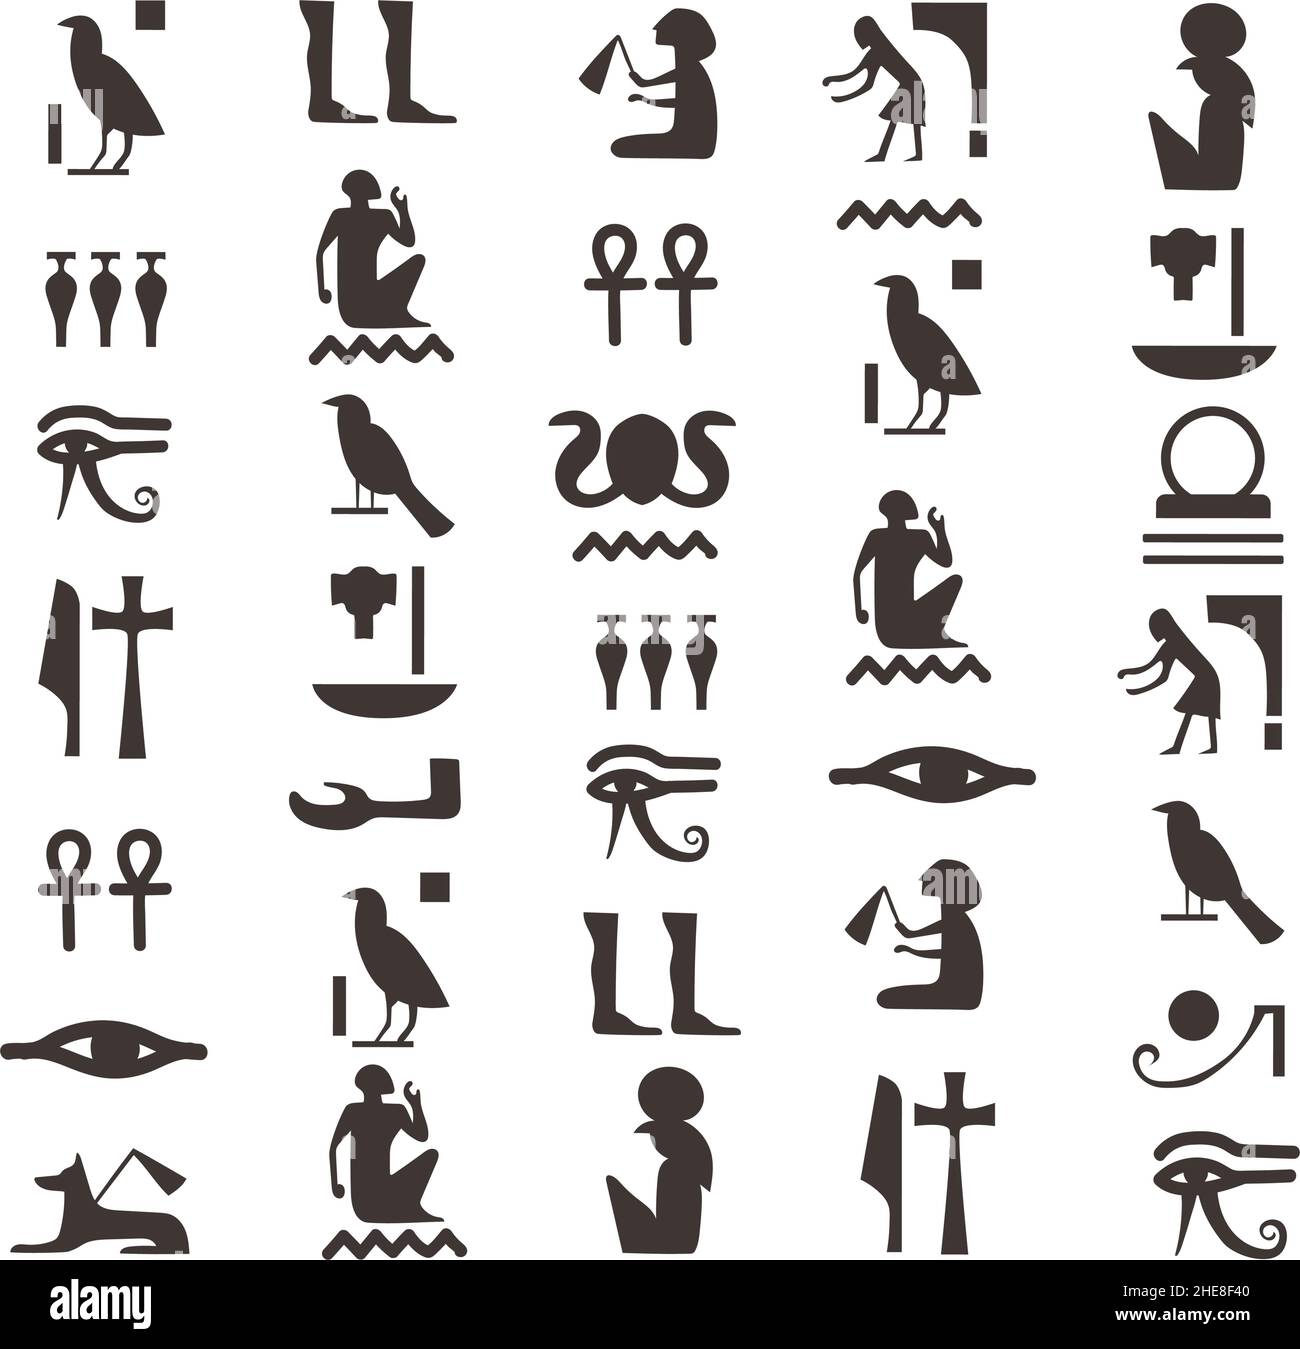 Hiéroglyphes d'egyptiens noirs.Hiéroglyphe de l'Égypte ancienne, modèle de lettres vectorielles.Illustration des symboles anciens, noir, histoire des signes hiéroglyphes, culture du pharaon Illustration de Vecteur